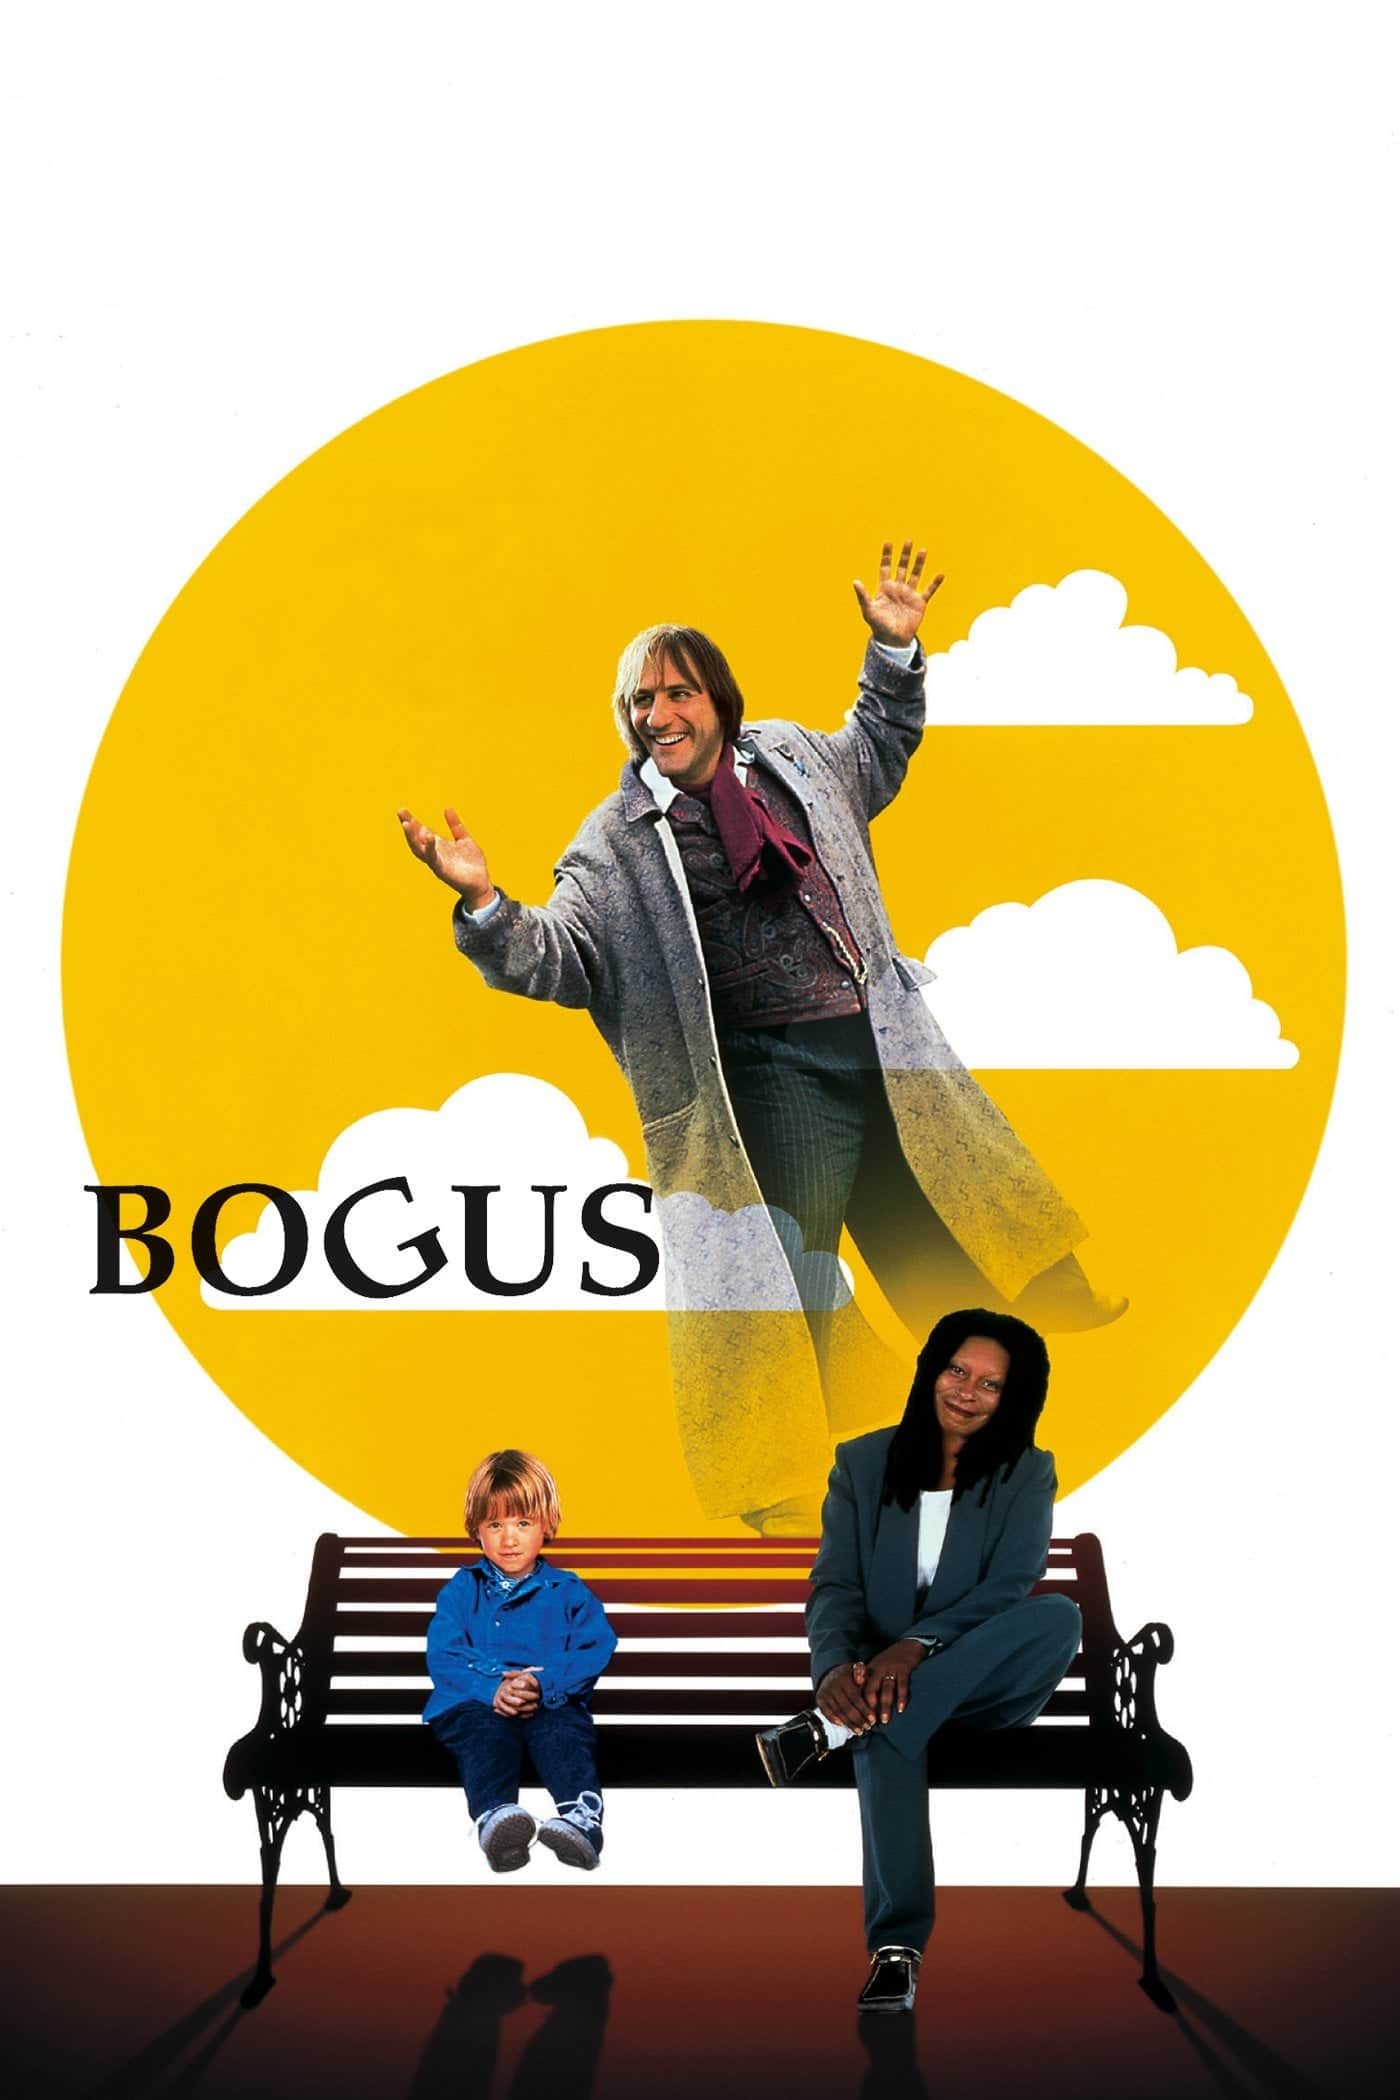 Plakat von "Bogus - Mein phantastischer Freund"